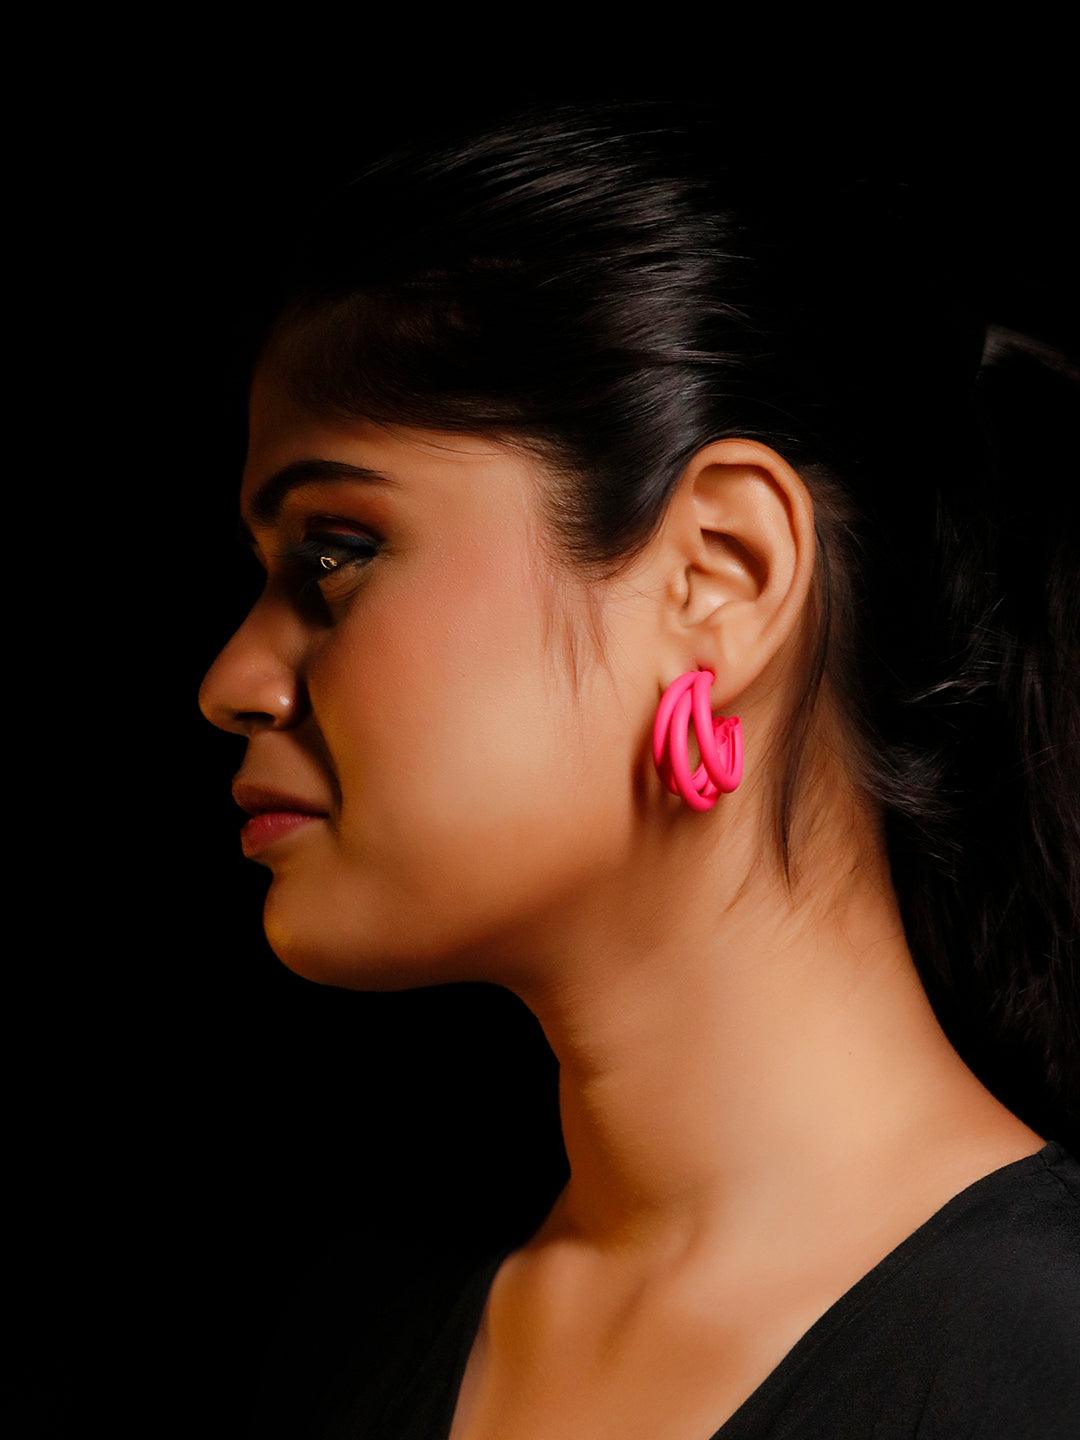 Ishhaara Triple Hoop Earrings - Magenta Pink